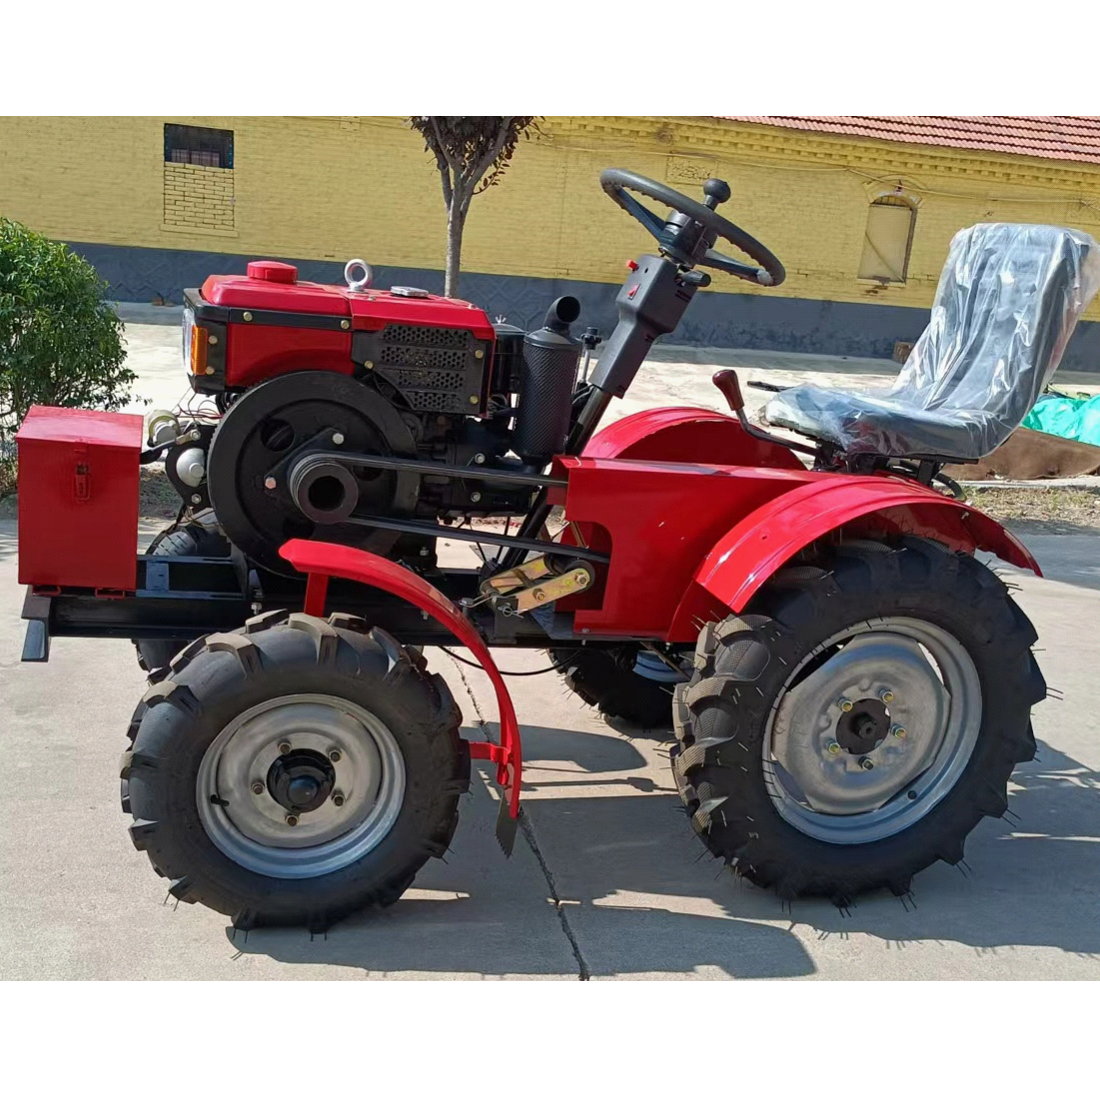 Mini tractor 2WD diesel 18hp 4 rueda con rotovator $3.5M